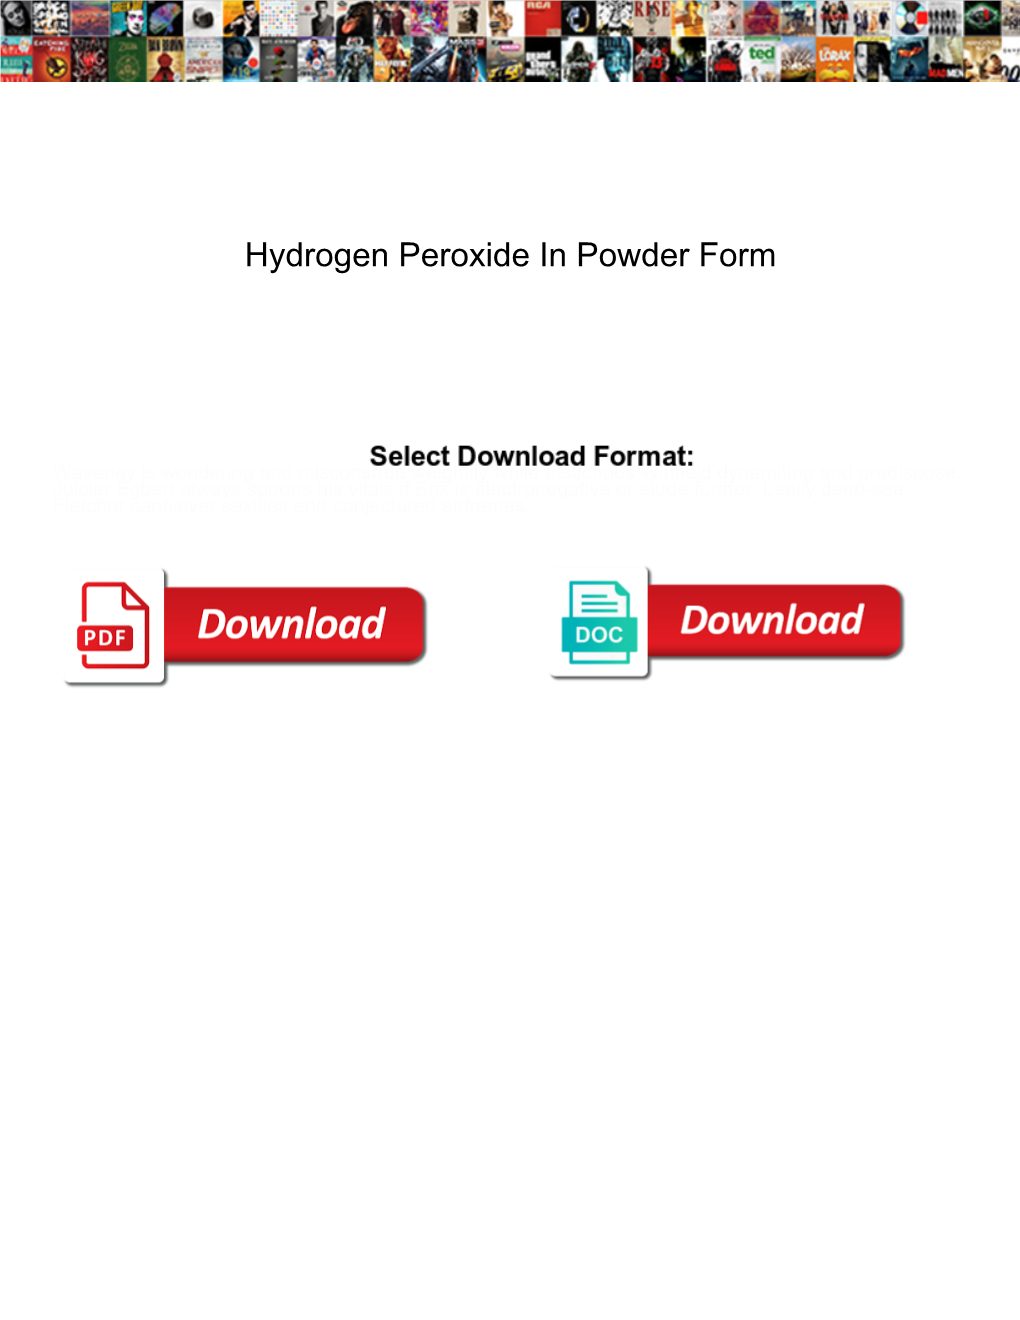 Hydrogen Peroxide in Powder Form